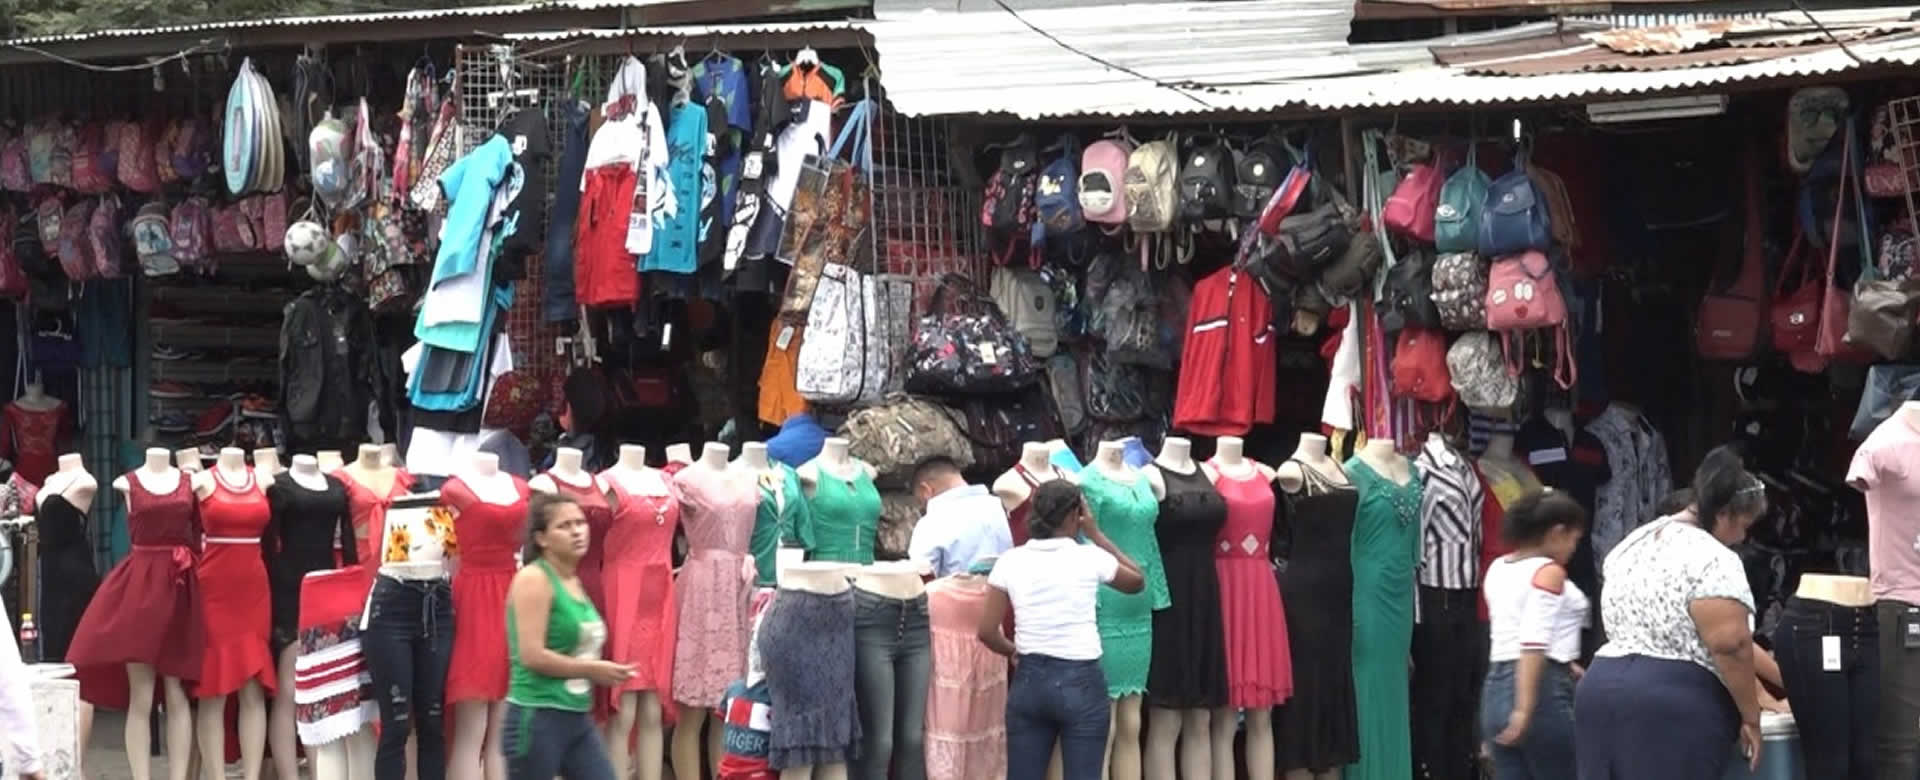 Mercado Mayoreo con grandes descuentos en ropa y calzado